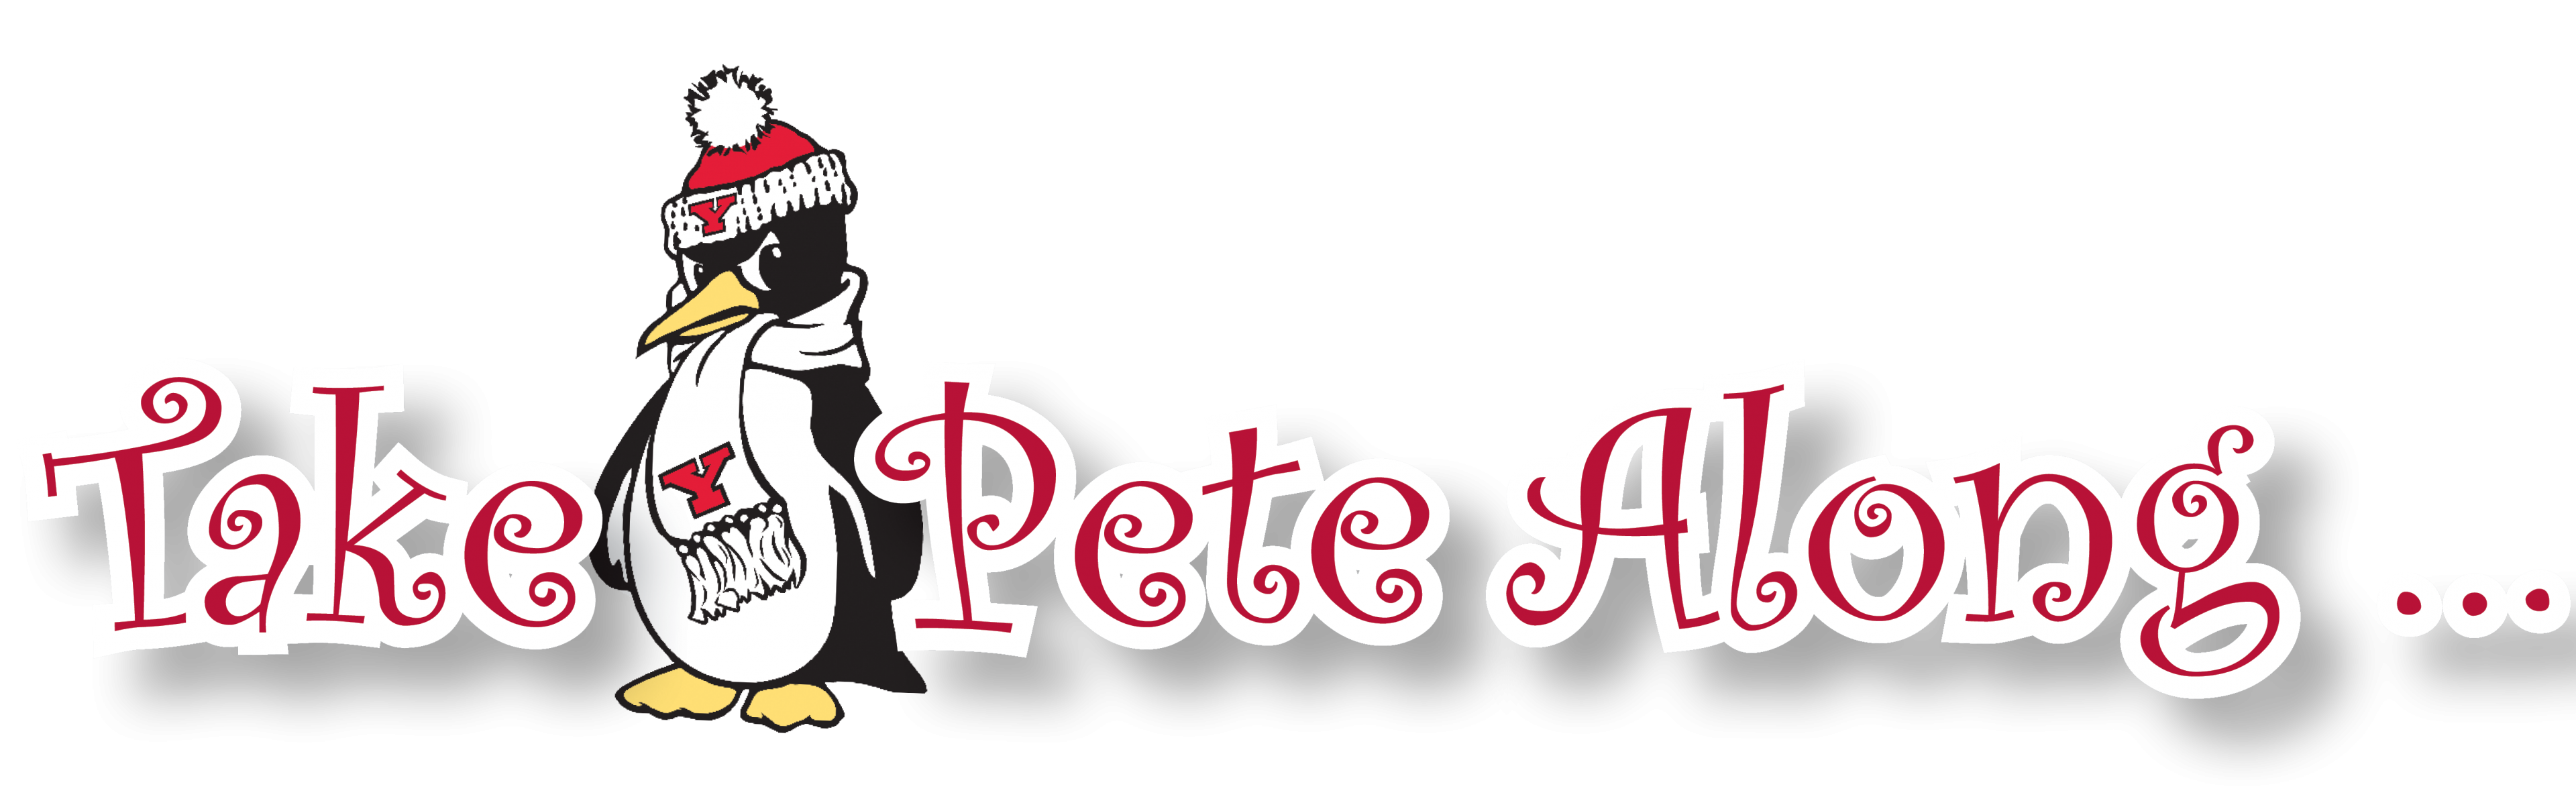 Take Pete Along